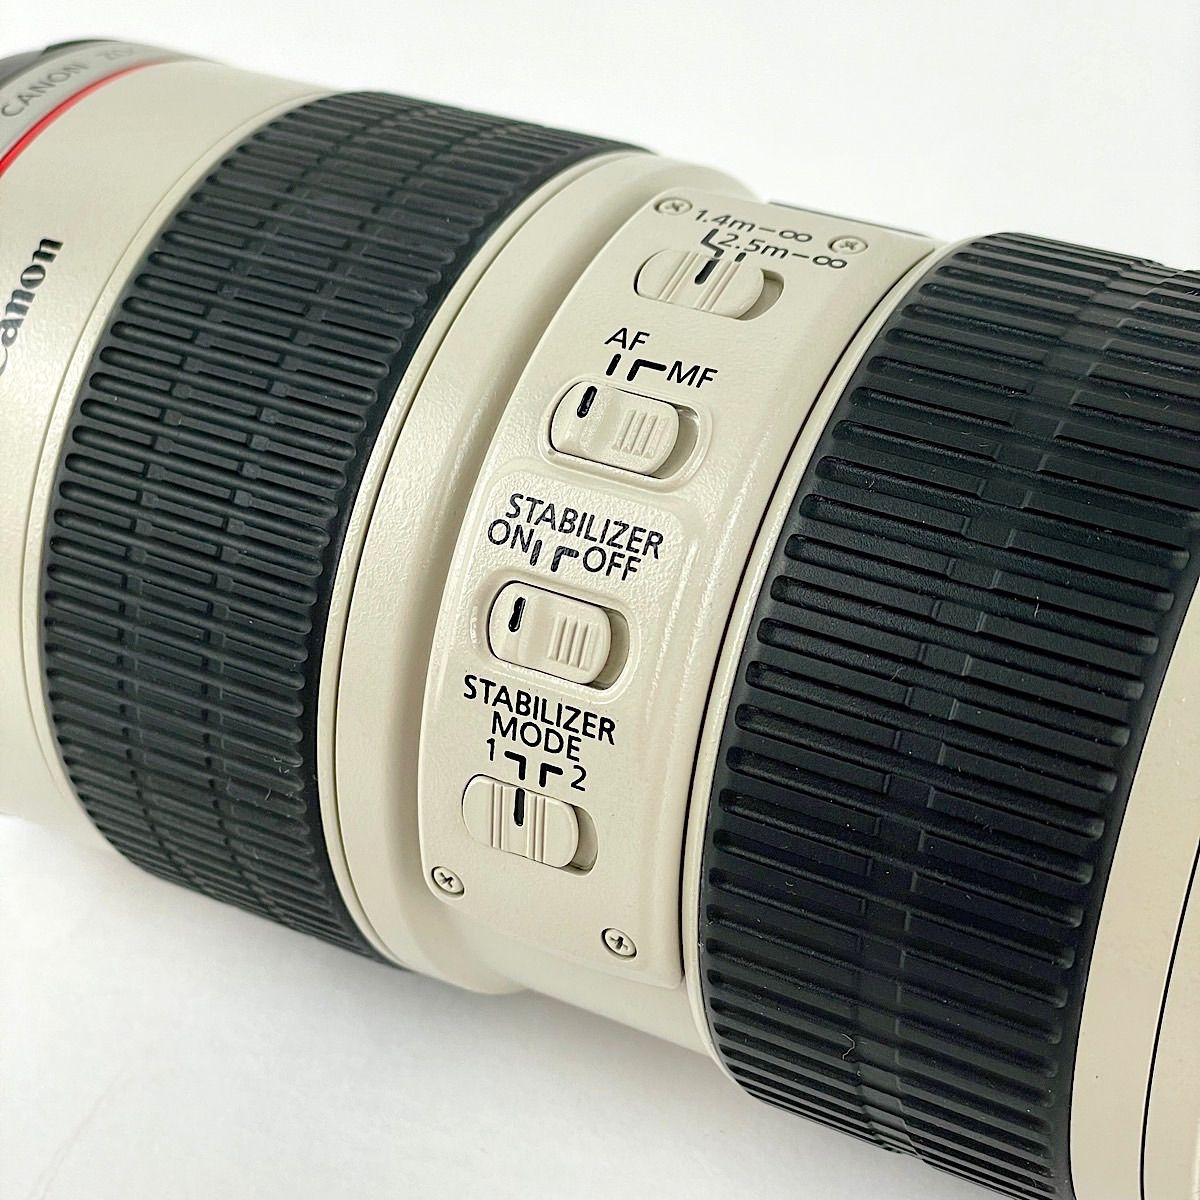 『USED動作品』 Canon EF70-200mm F2.8 L IS USM ケース、フードセット 美品